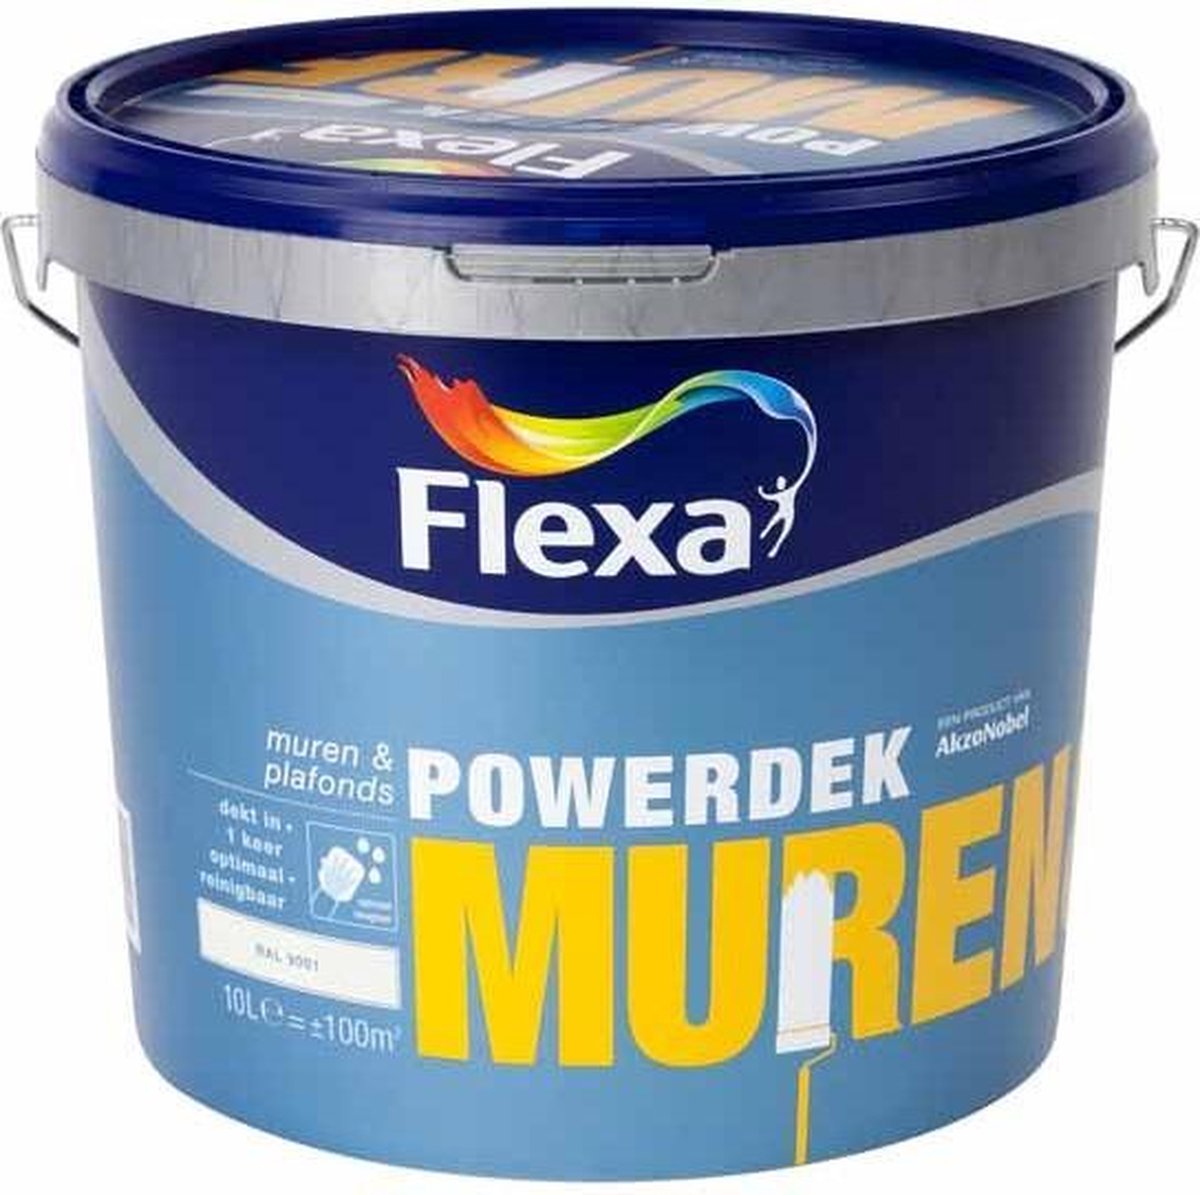 oven Standaard Verbonden Flexa Powerdek Muurverf - Muren & Plafonds - Binnen - RAL 9001 - 10 liter |  bol.com